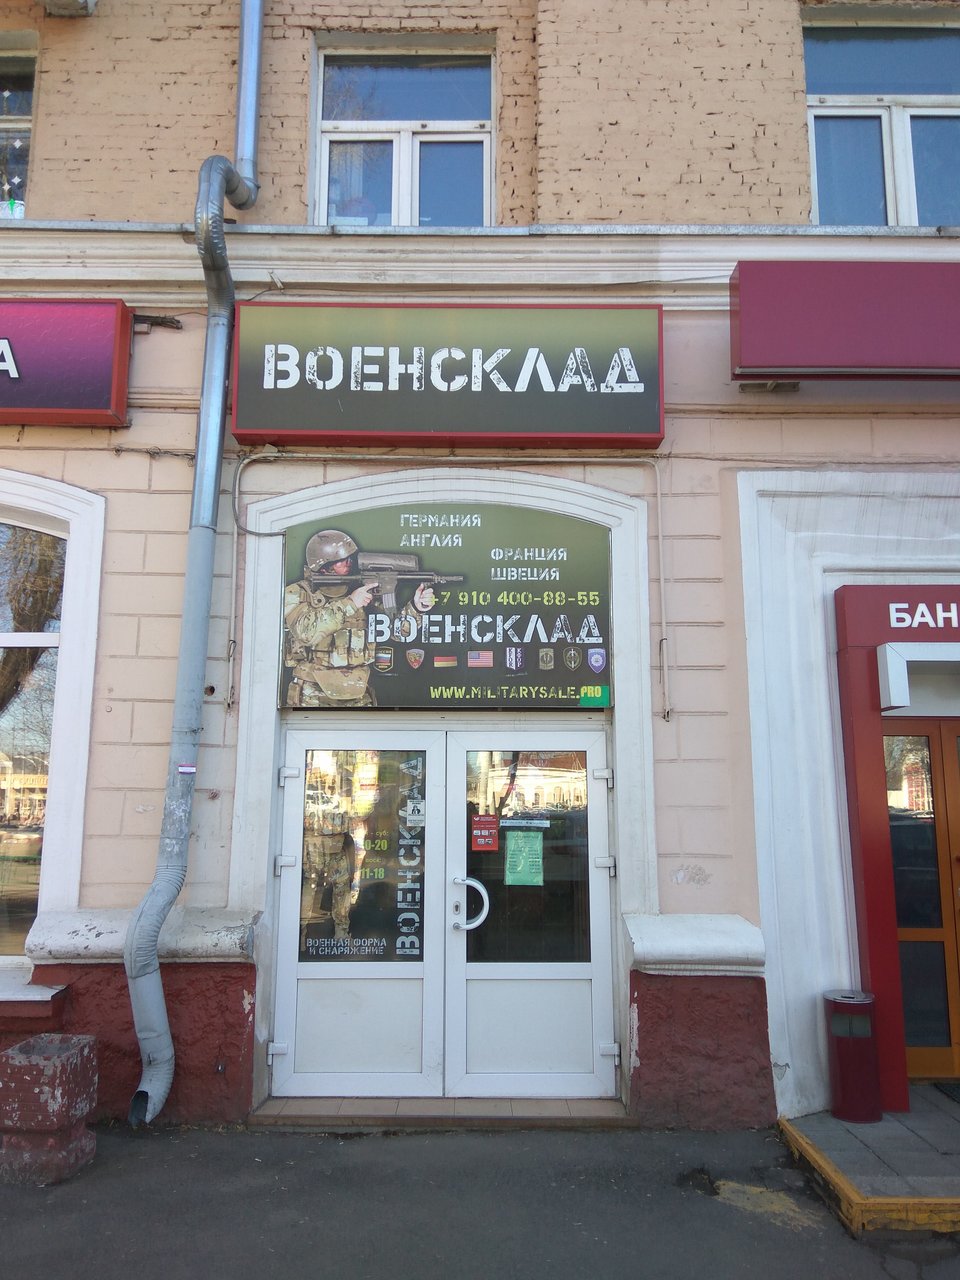 Вход в военторг "Военсклад" на Ревпроспекте в Подольске